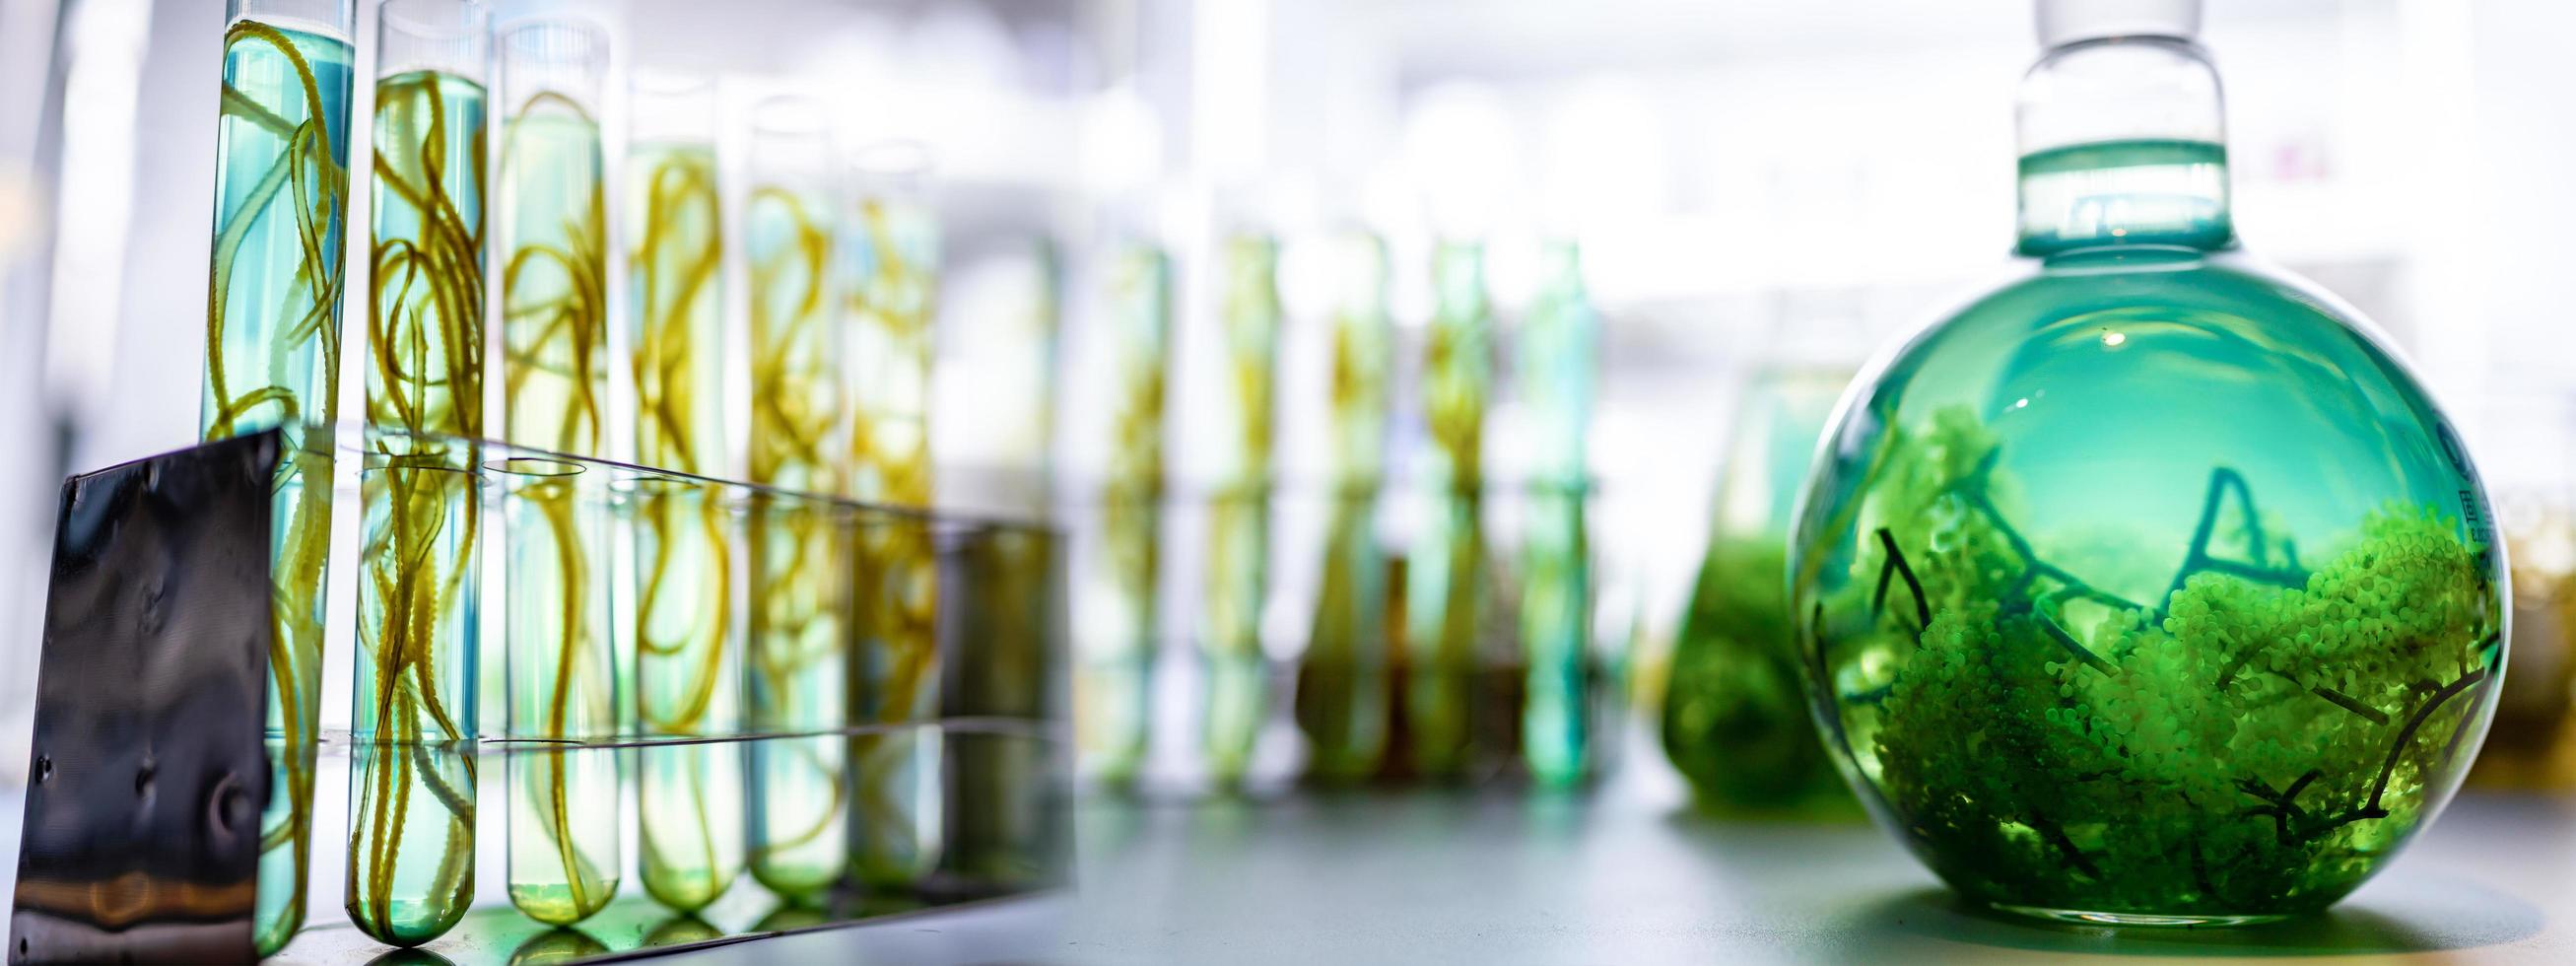 antecedentes de la investigación en biotecnología de algas, investigación de experimentos de algas en laboratorio para su uso en energía de biocombustibles industriales, producción de desarrollo sostenible del sistema industrial de biodiesel foto